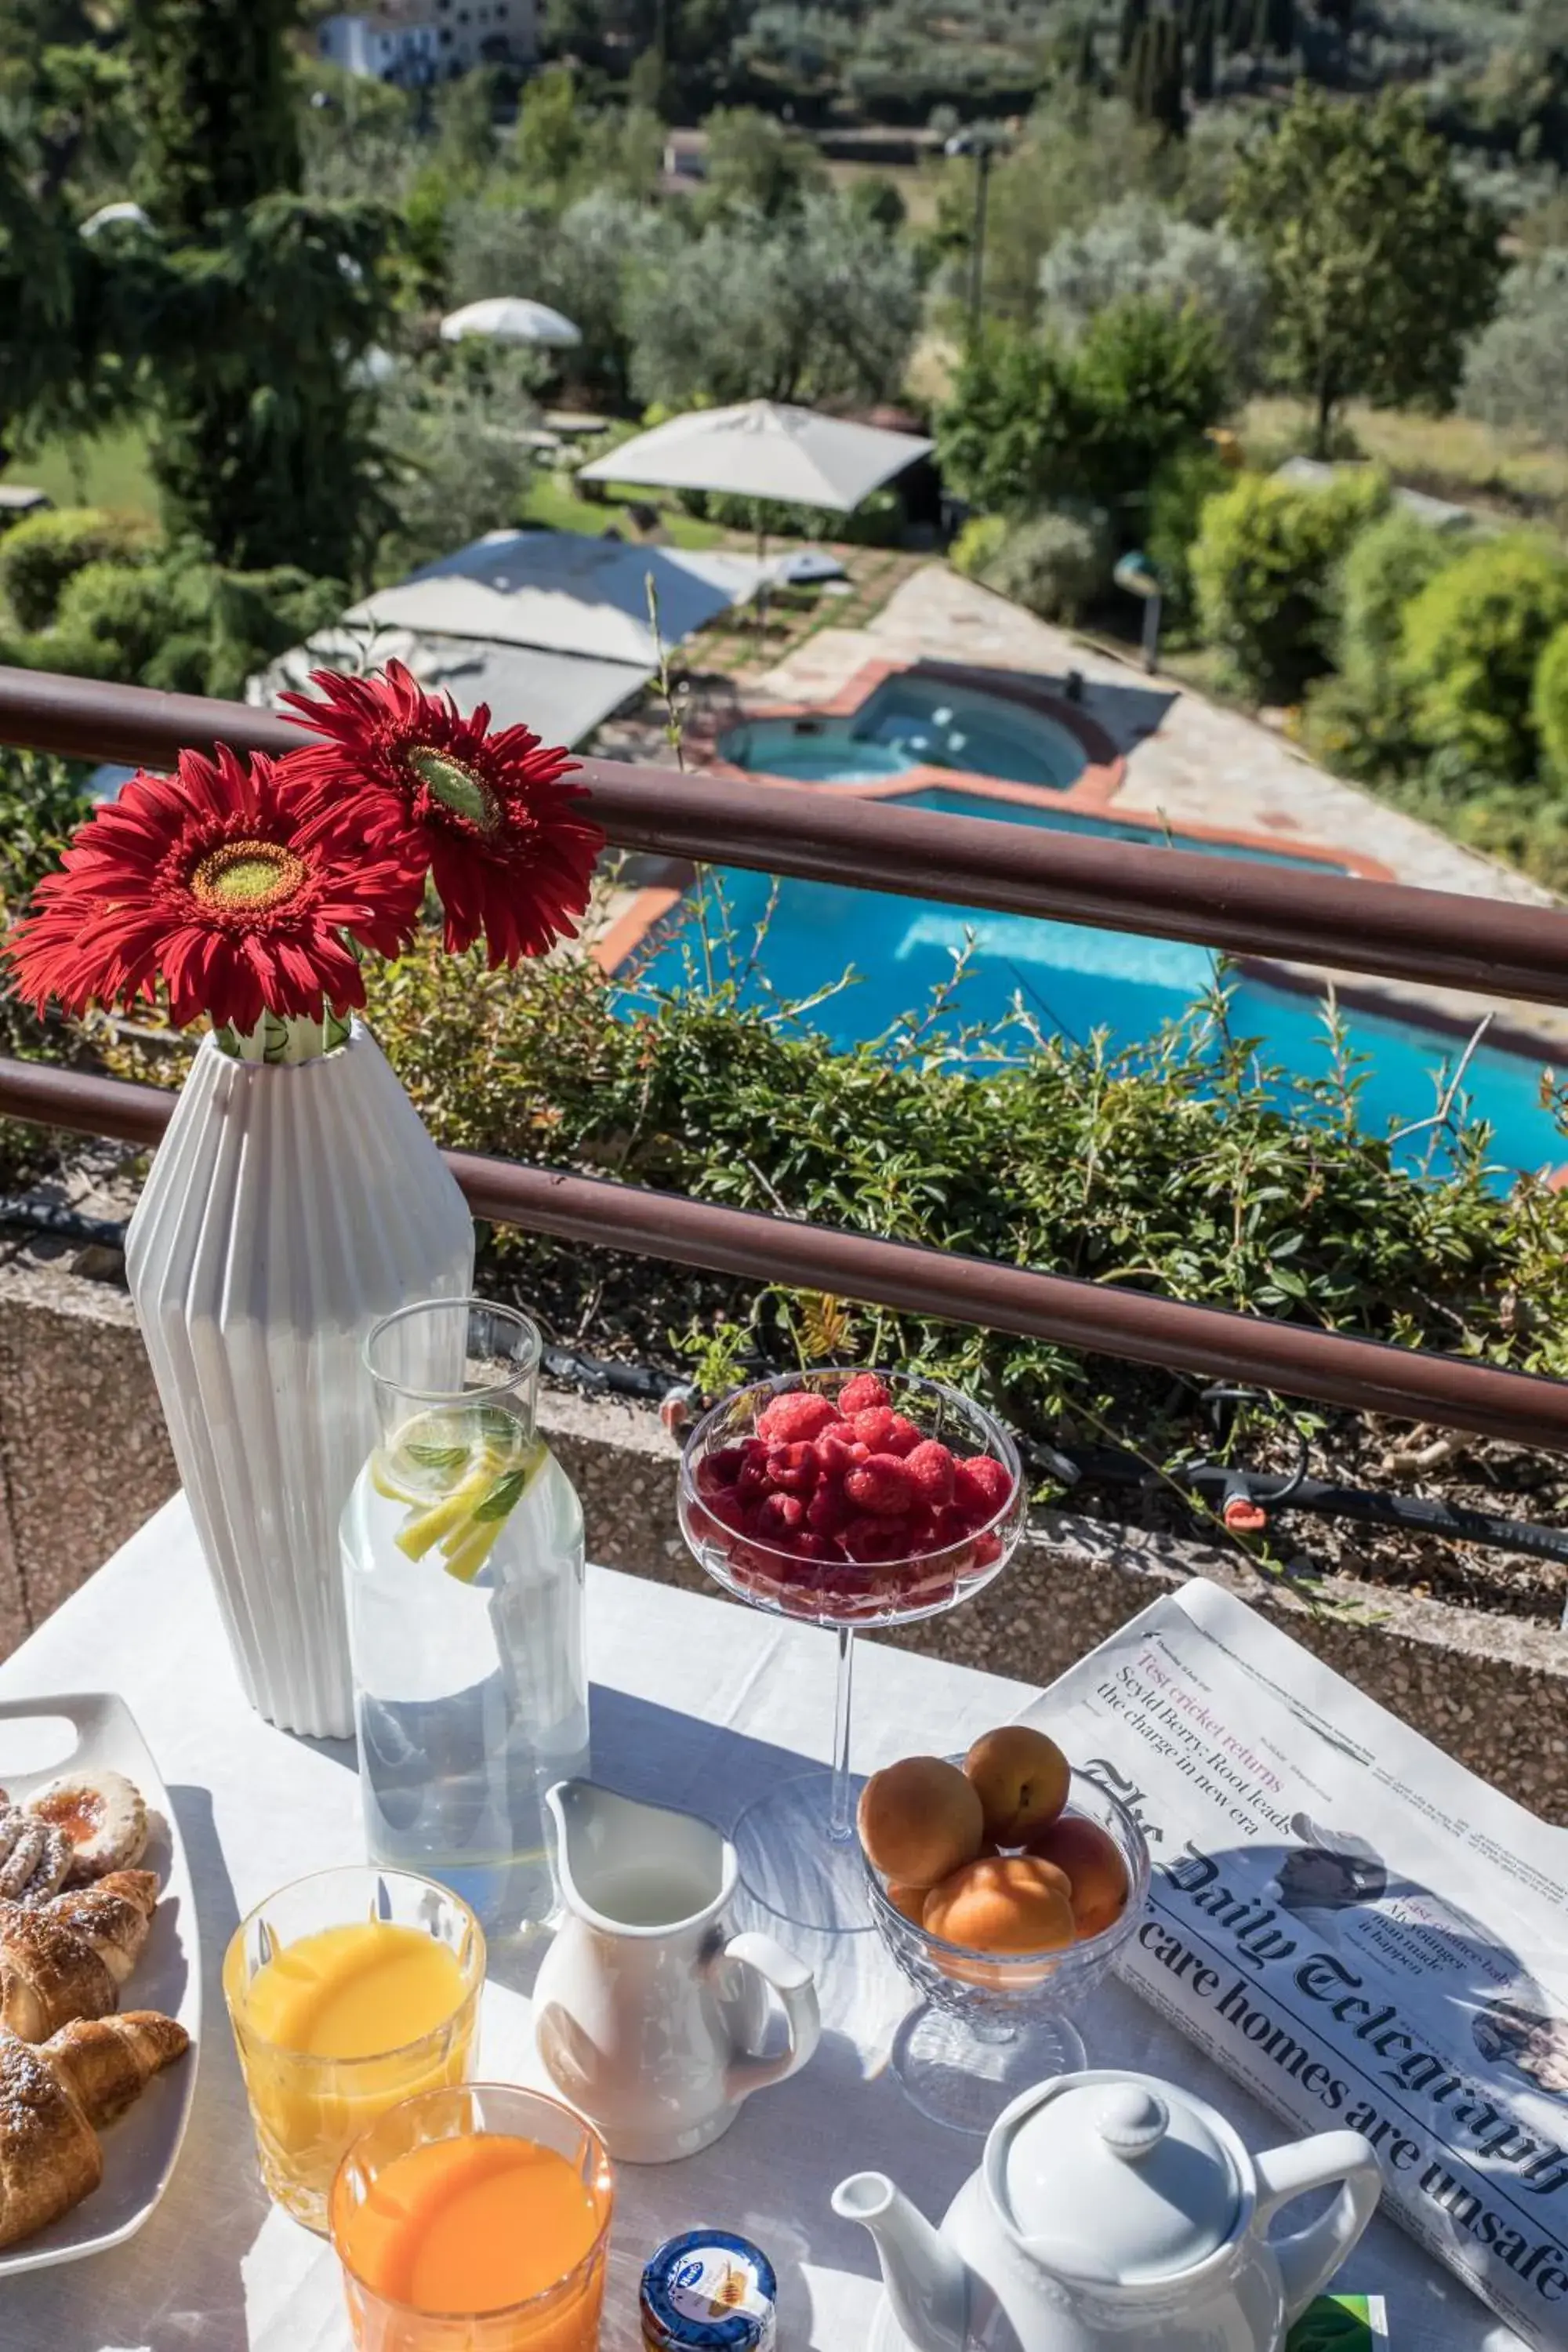 Food, Pool View in Relais Santa Chiara Hotel